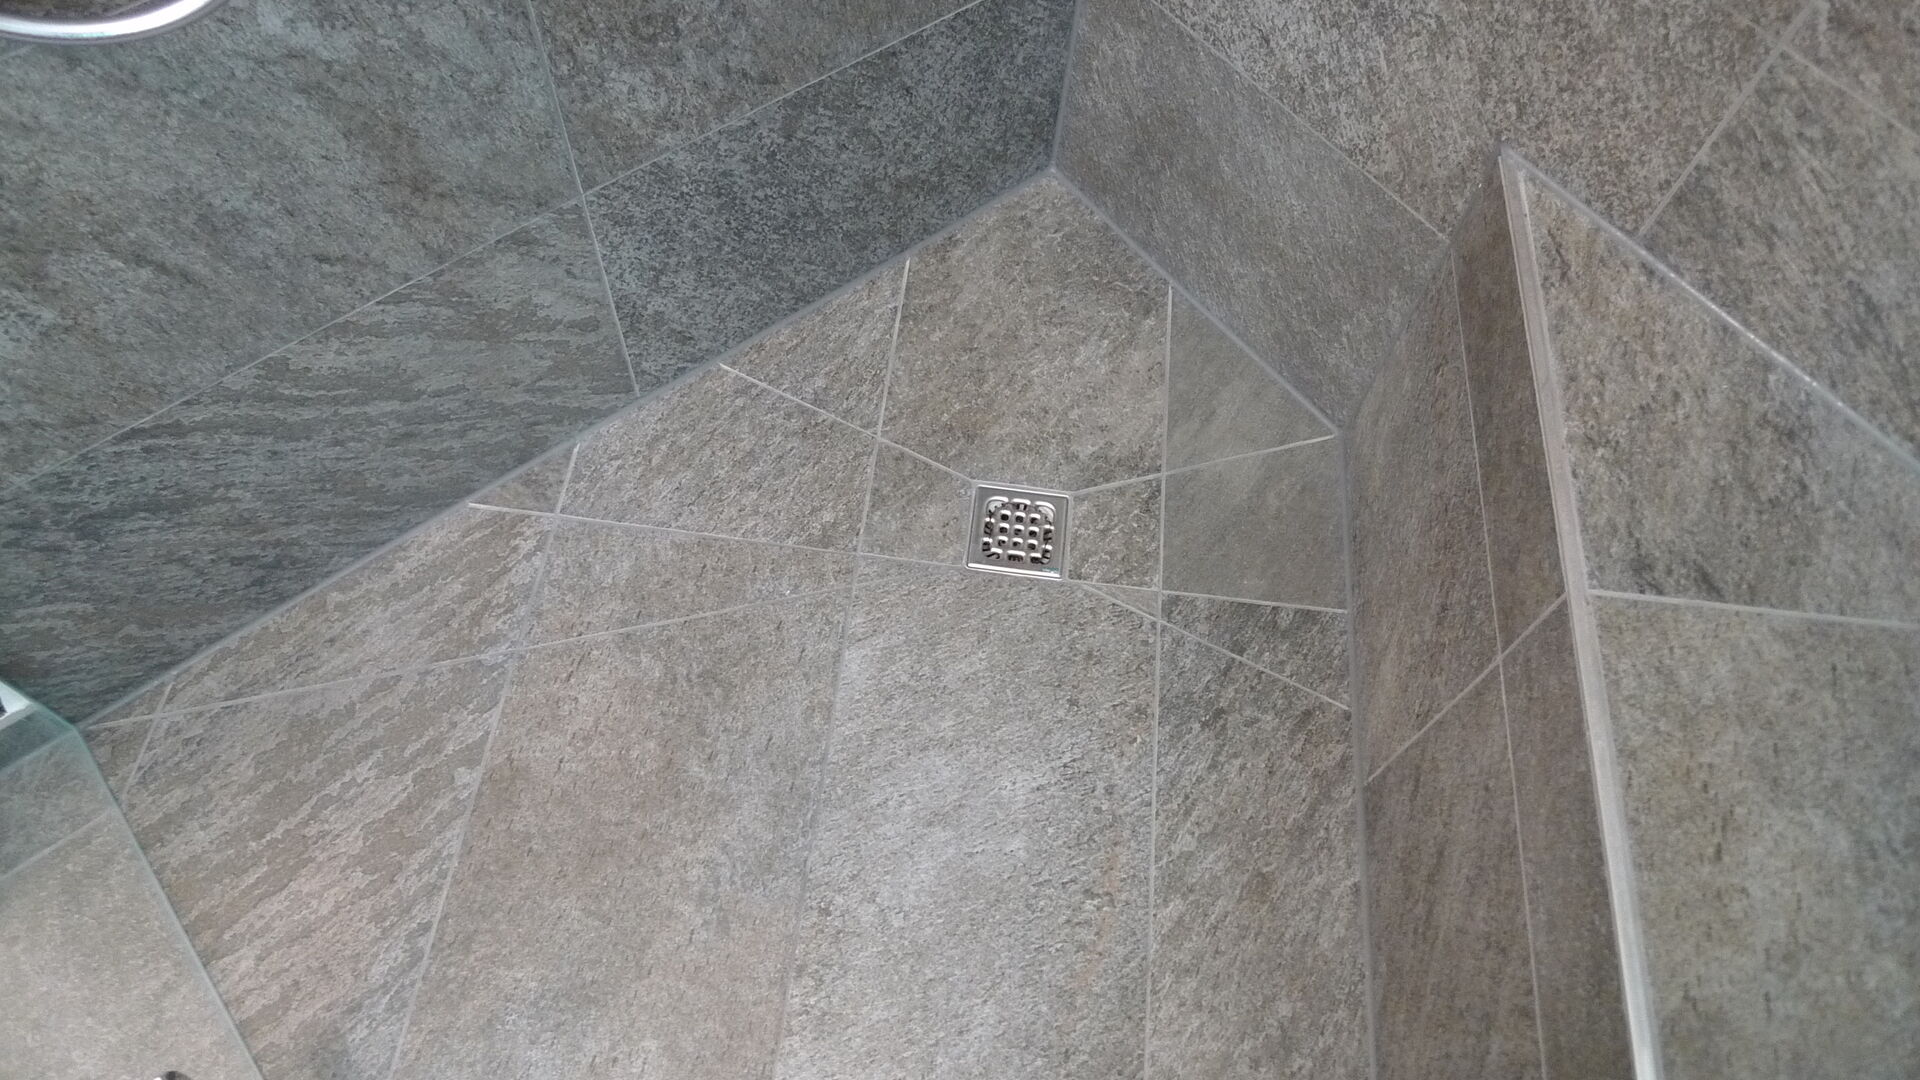 Gekonnt wurden die neuen Badezimmerfliesen in der Dusche verlegt. Ihr Badprofi bassena-bad.at berät Sie gerne.